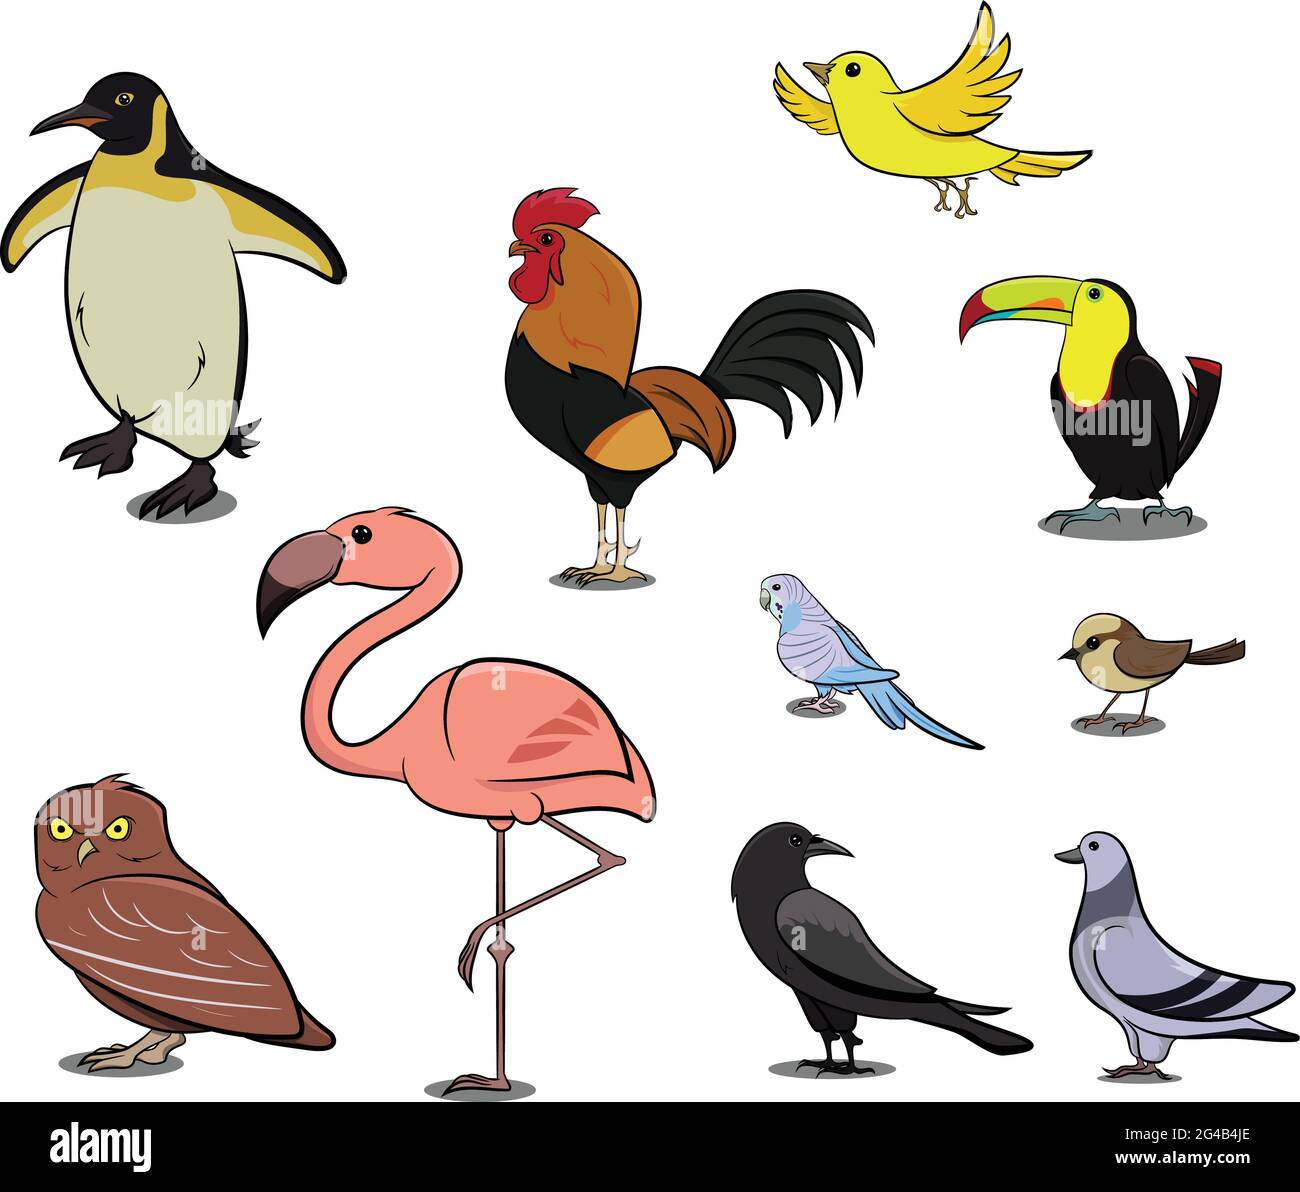 Uccelli di diverse parti del mondo. Uccelli comuni. Pinguino Pollo Sparrow Dodo Bird Pigeon Duck Swan Owl Crow. Icone Imposta illustrazioni vettoriali. Illustrazione Vettoriale